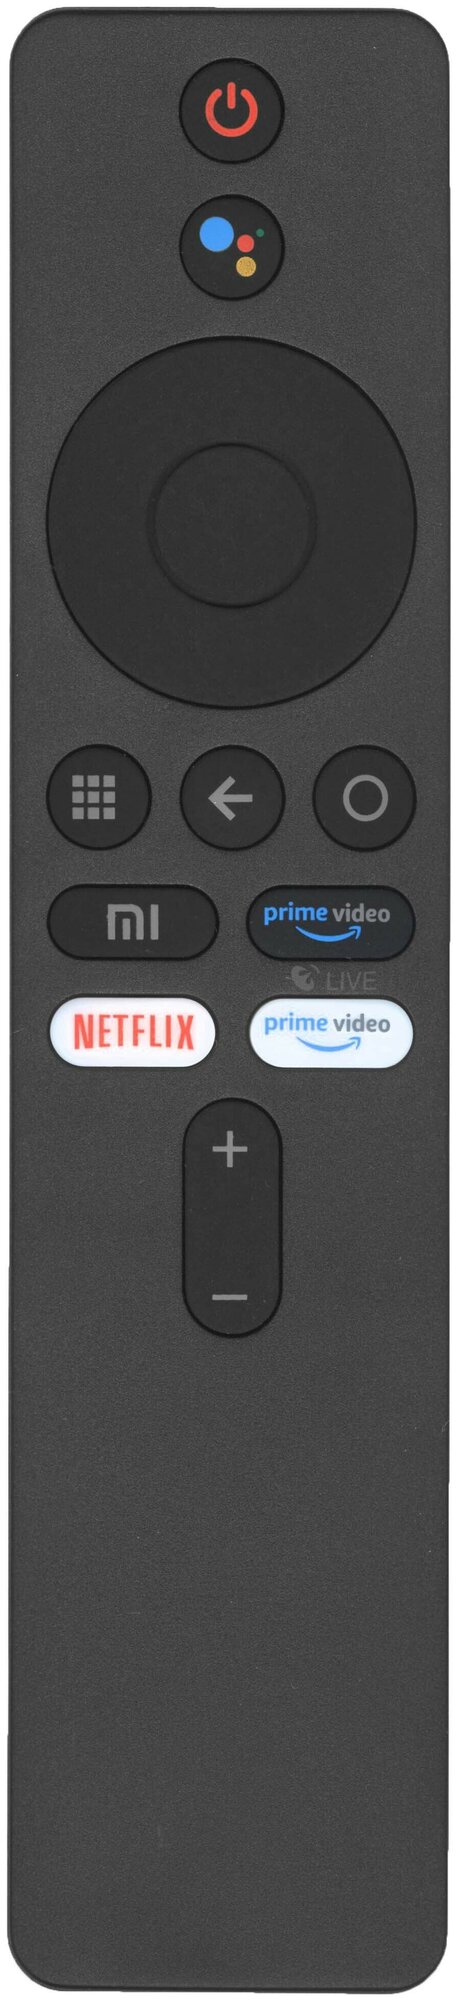 Универсальный голосовой пульт BT-MI01 для XIAOMI телевизоров и приставок Android TV / Box / Stick